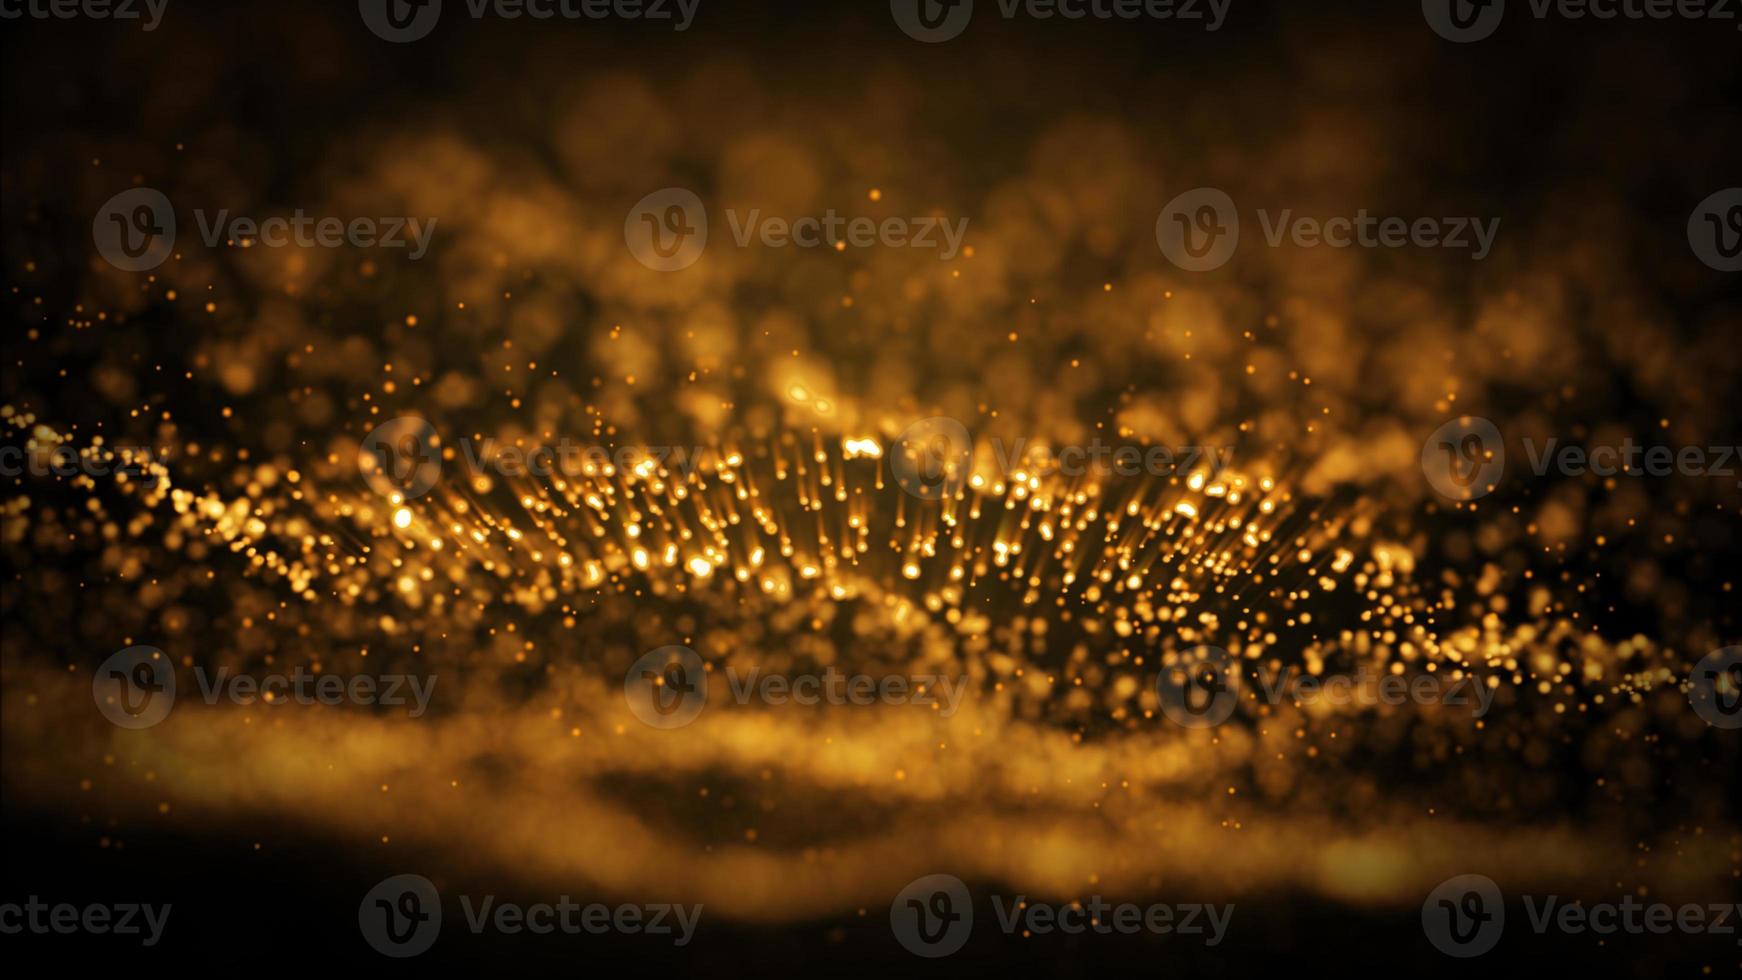 abstracte goudgele gloeiende deeltje branden met vuur effect op de achtergrond van de ruimte. 3d illustratie render foto